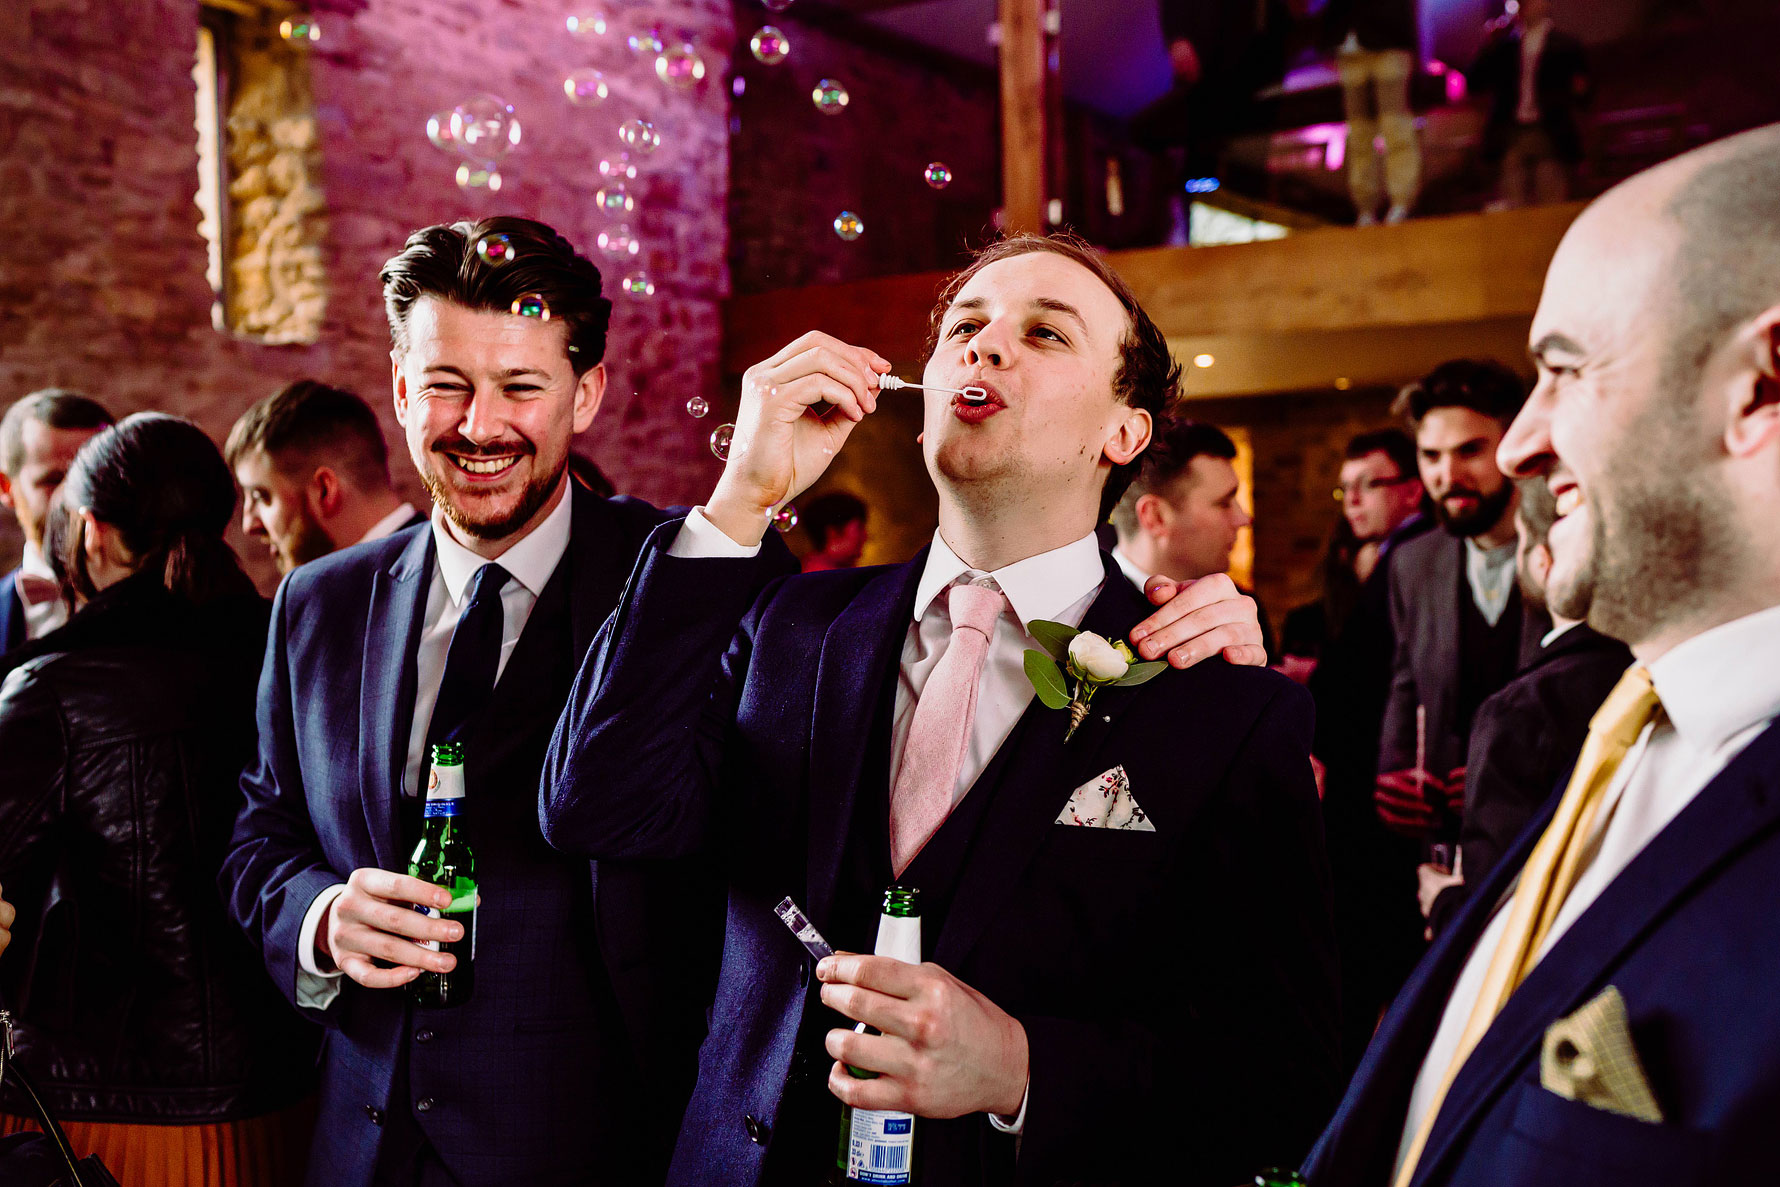 guests blow bubbles at a wedding